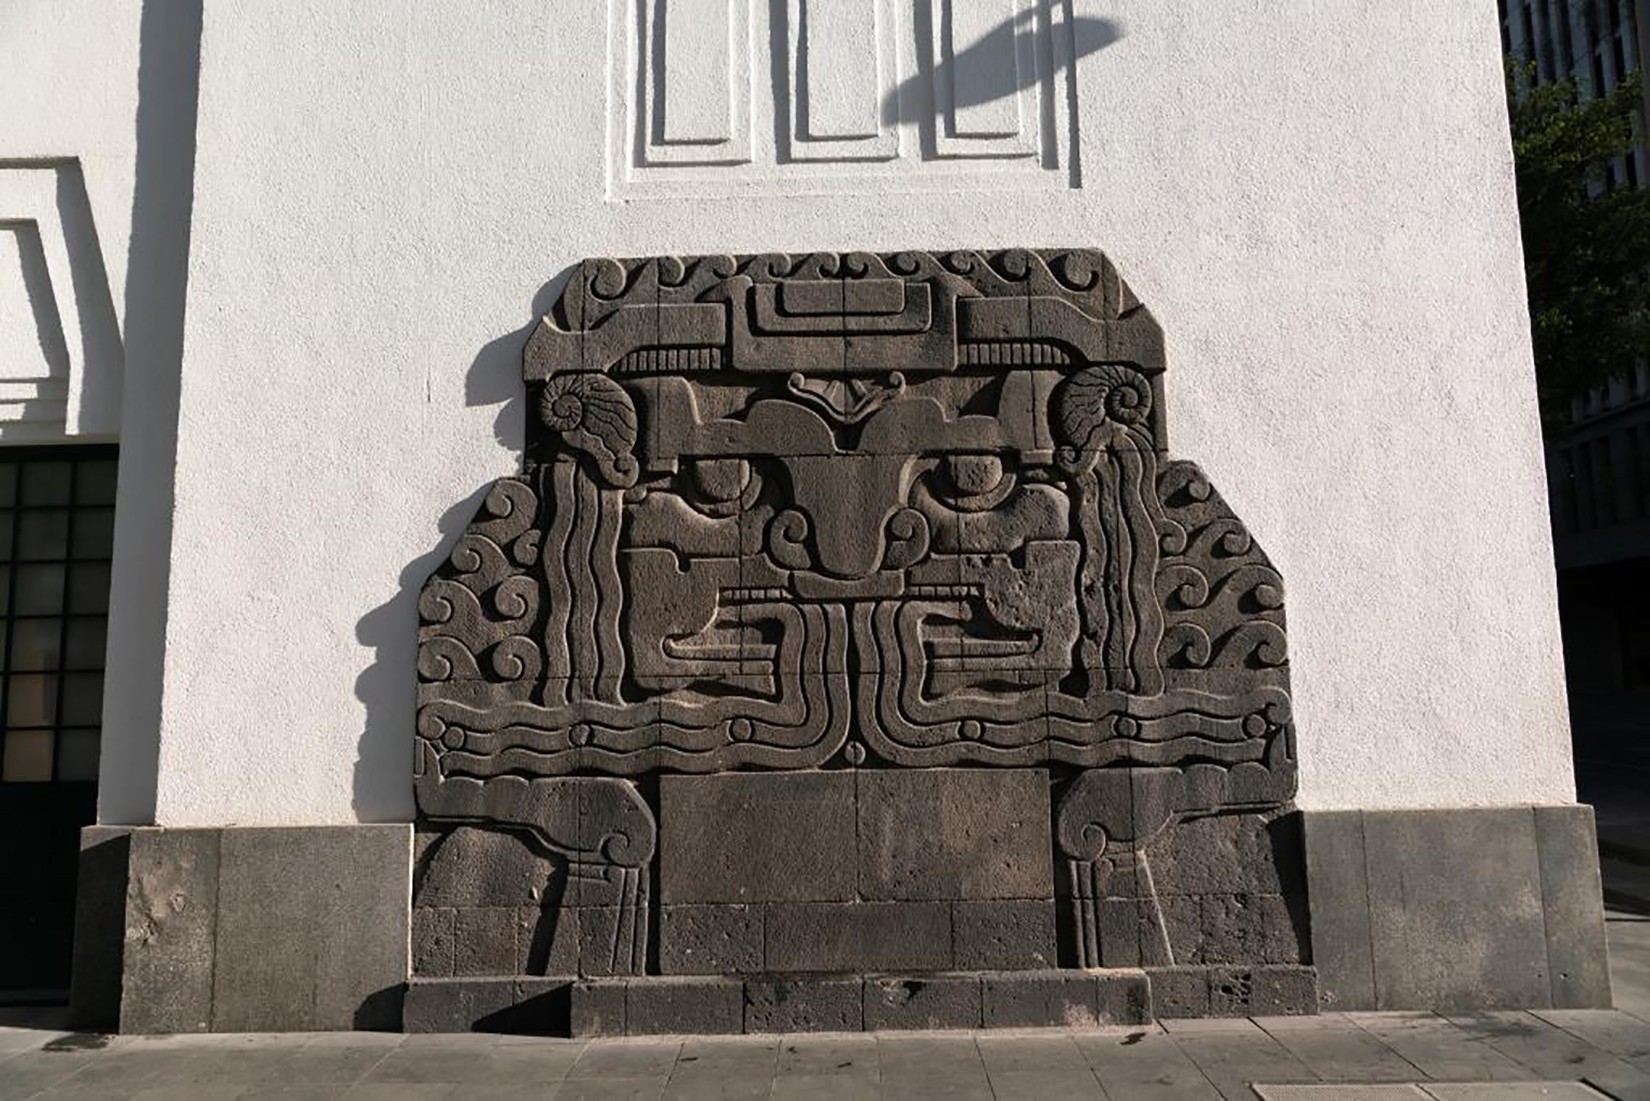 Altorelieve en piedra del dios del agua prehispánico realizado por Manuel Centurión, como símbolo del elemento utilizado por los bomberos, 1928. (Foto: EKV)